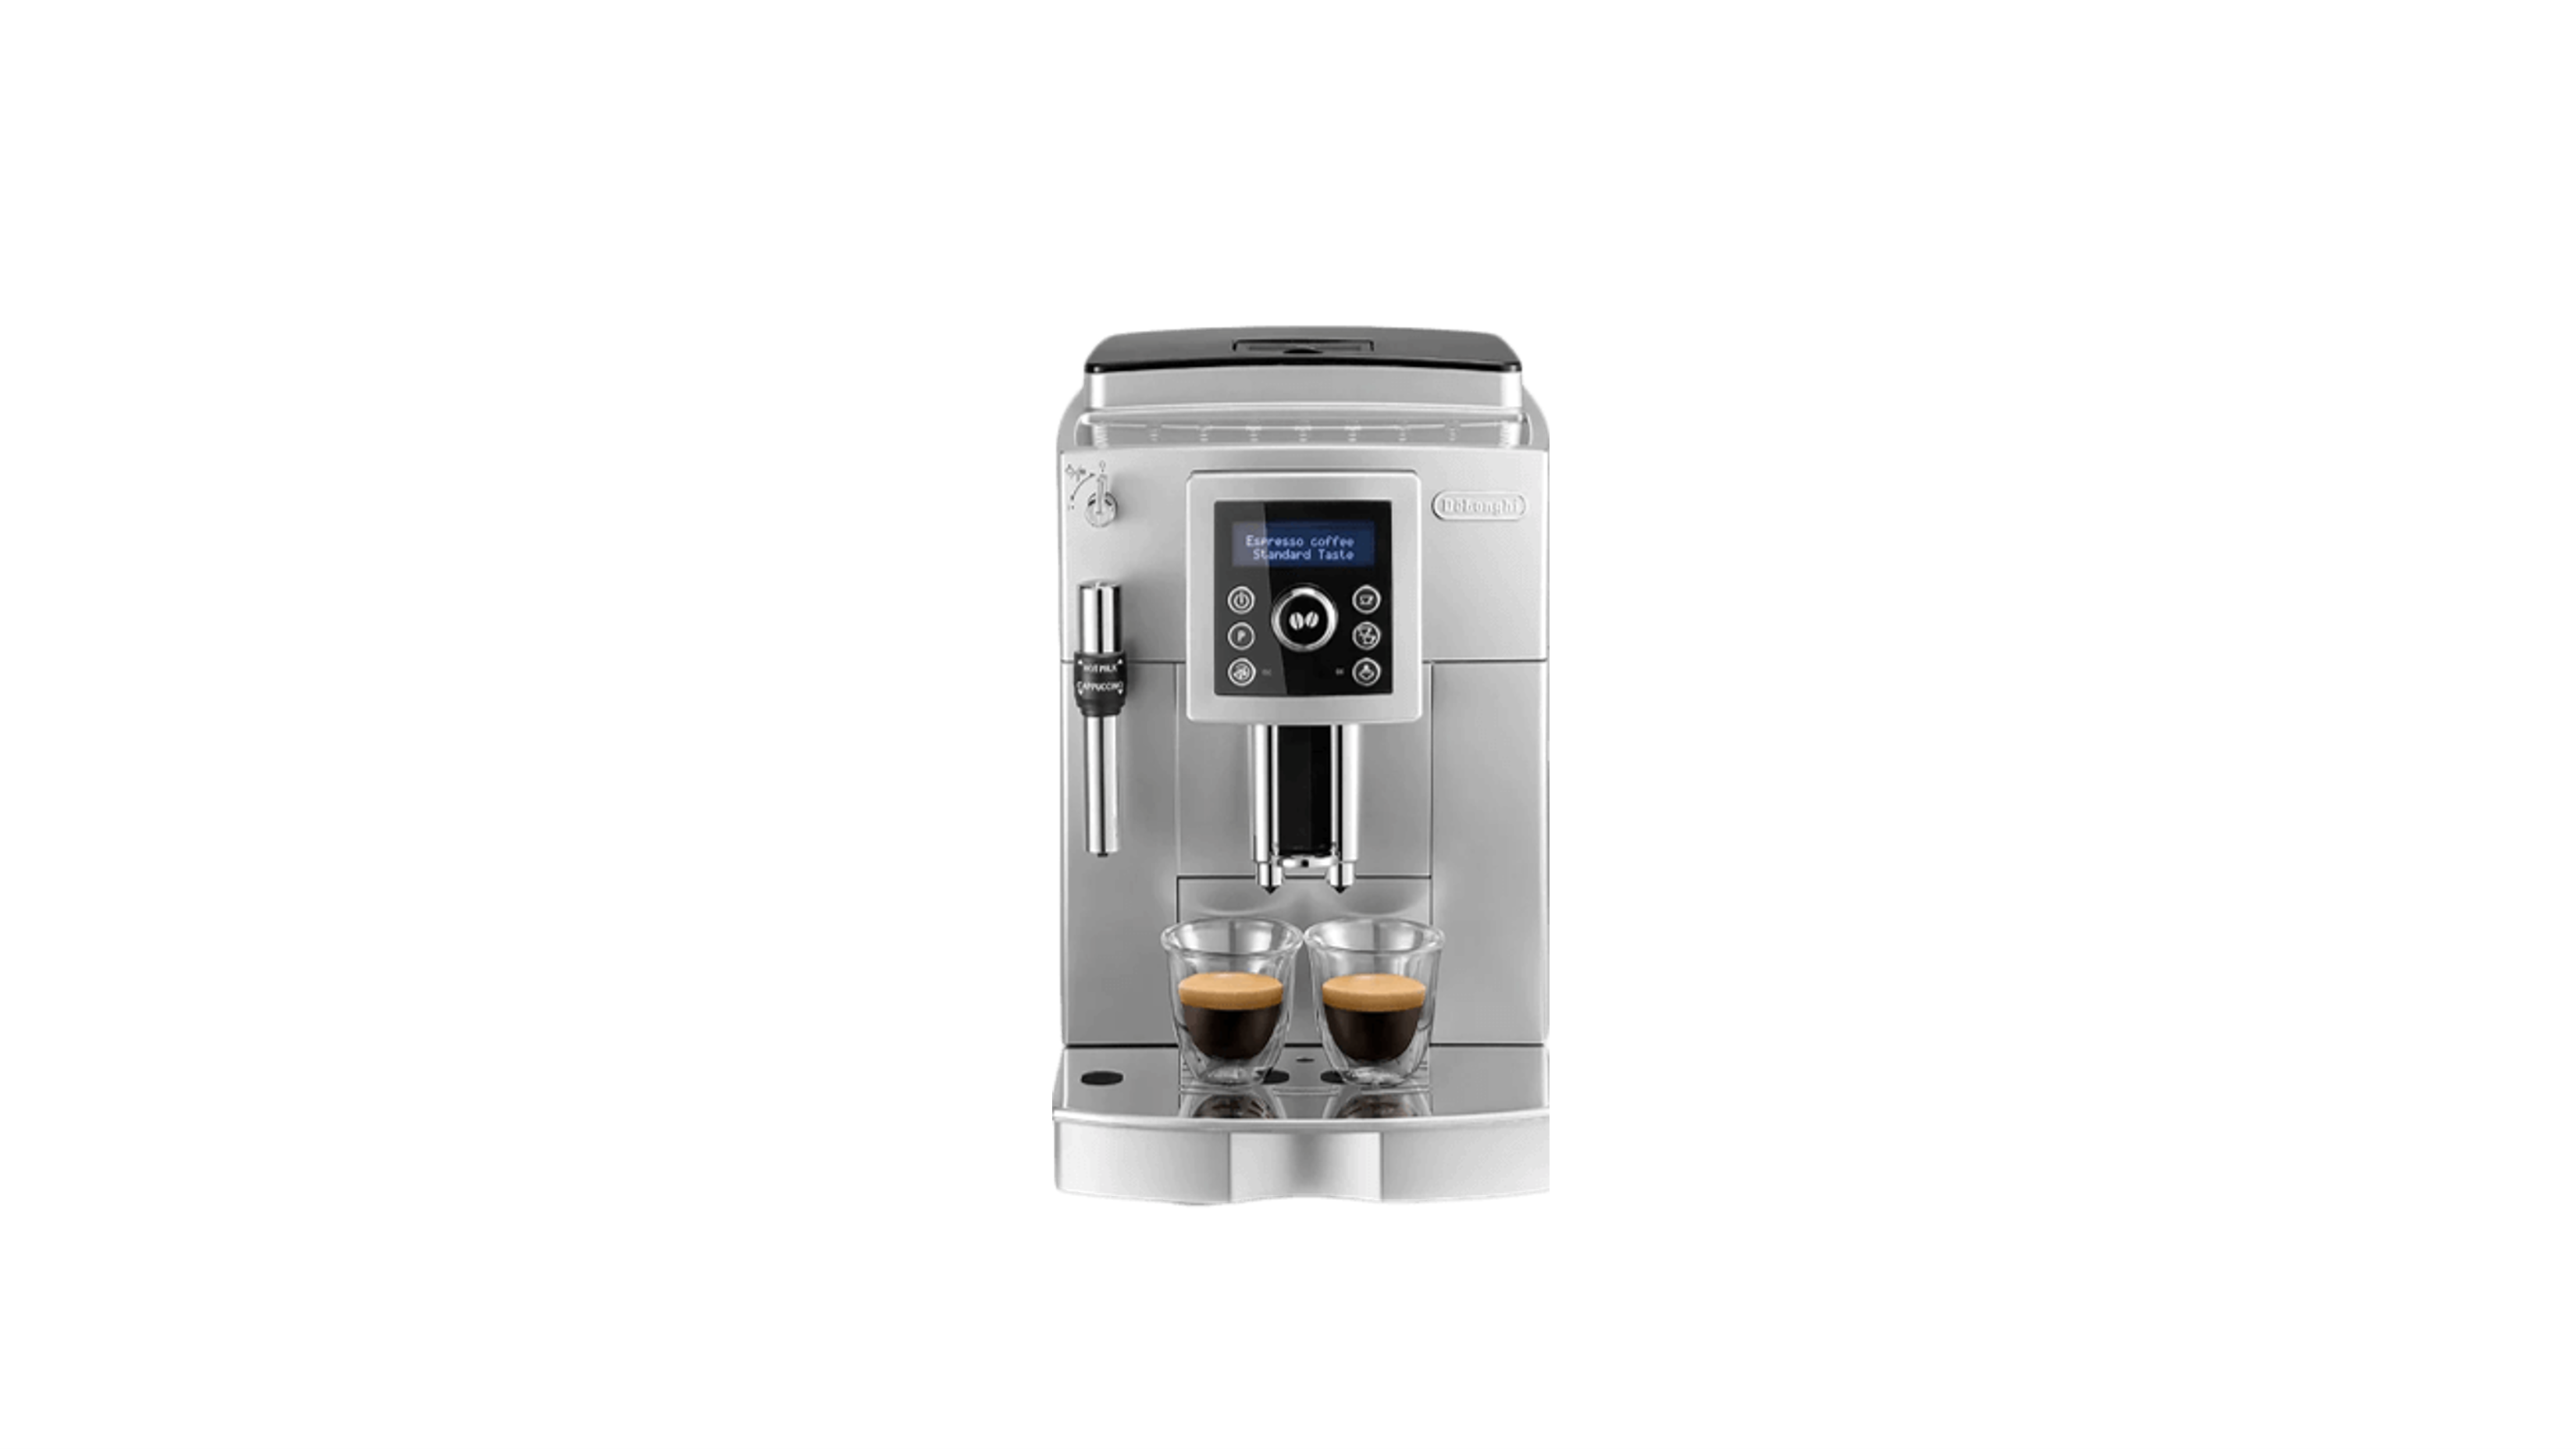 Hauptgewinn - Delonghi Kaffeevollautomat (Beispielbild - Gewinn kann abweichen)